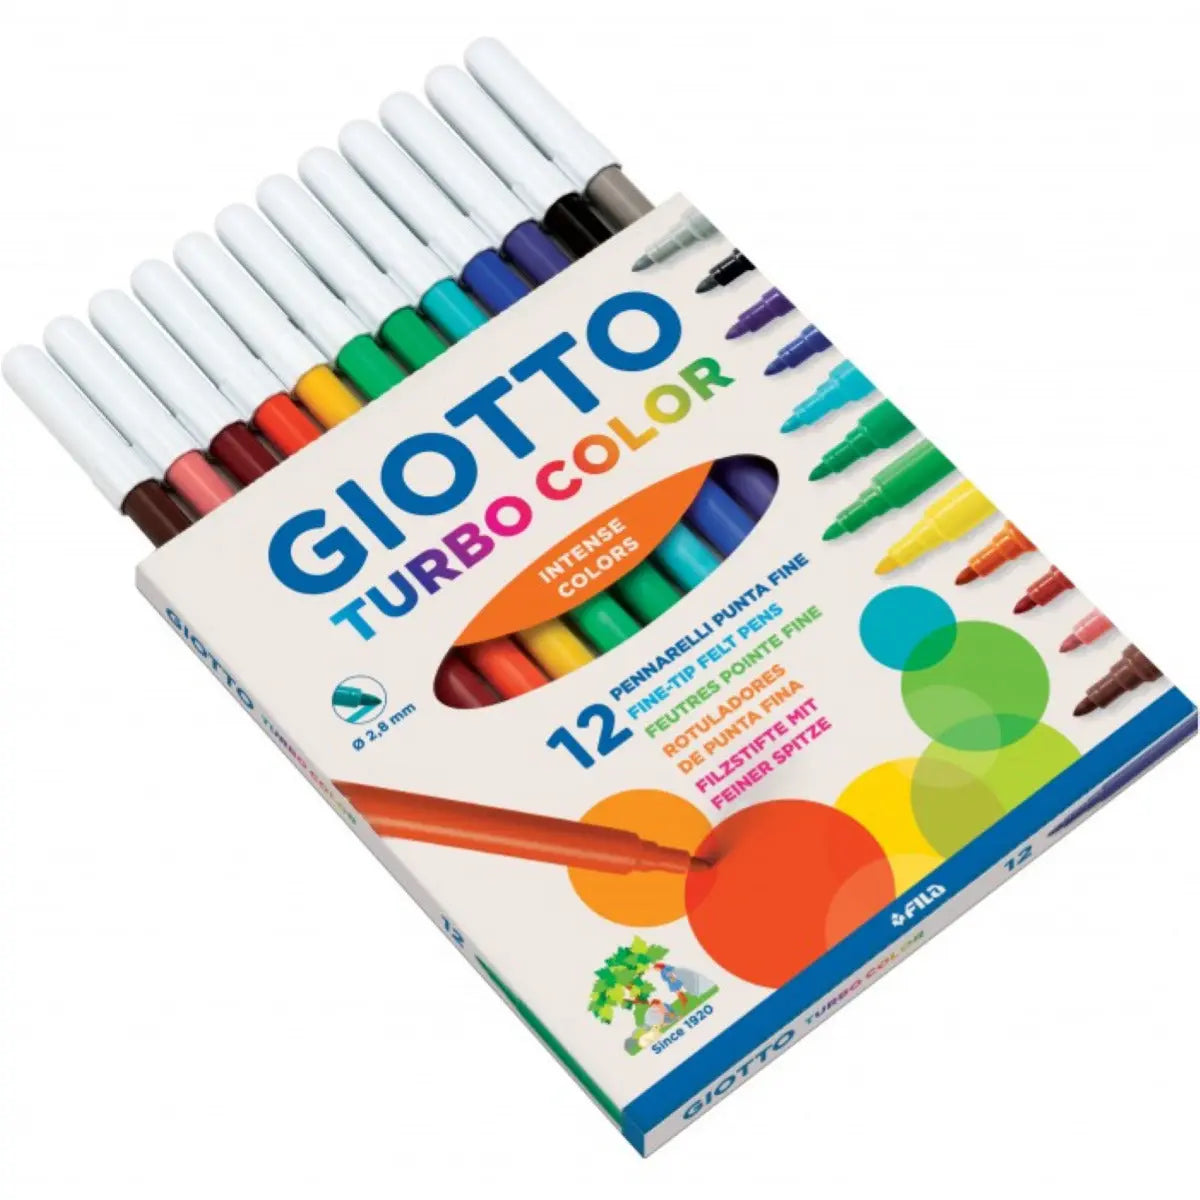 Pennarelli Giotto Turbo Color Skin Tones punta fine in fibra 2,8 mm colori